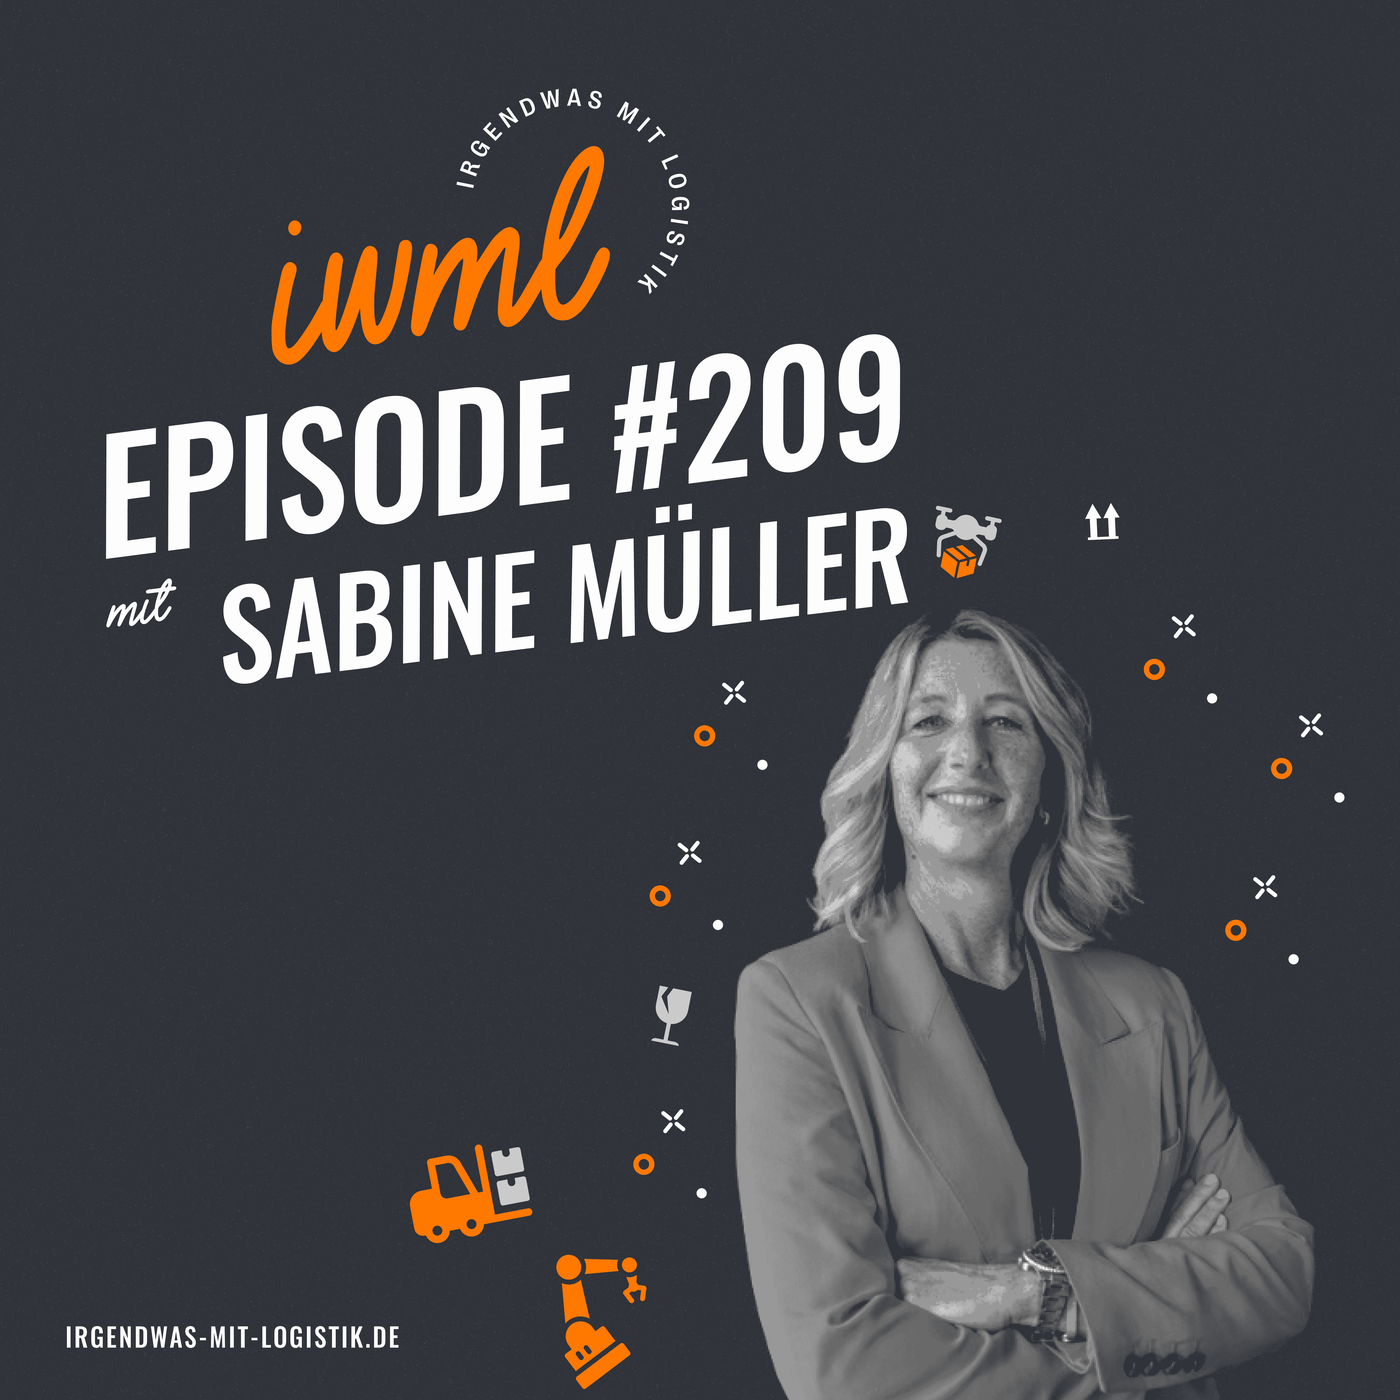 IWMl #209 mit Sabine Müller von DHL Consulting